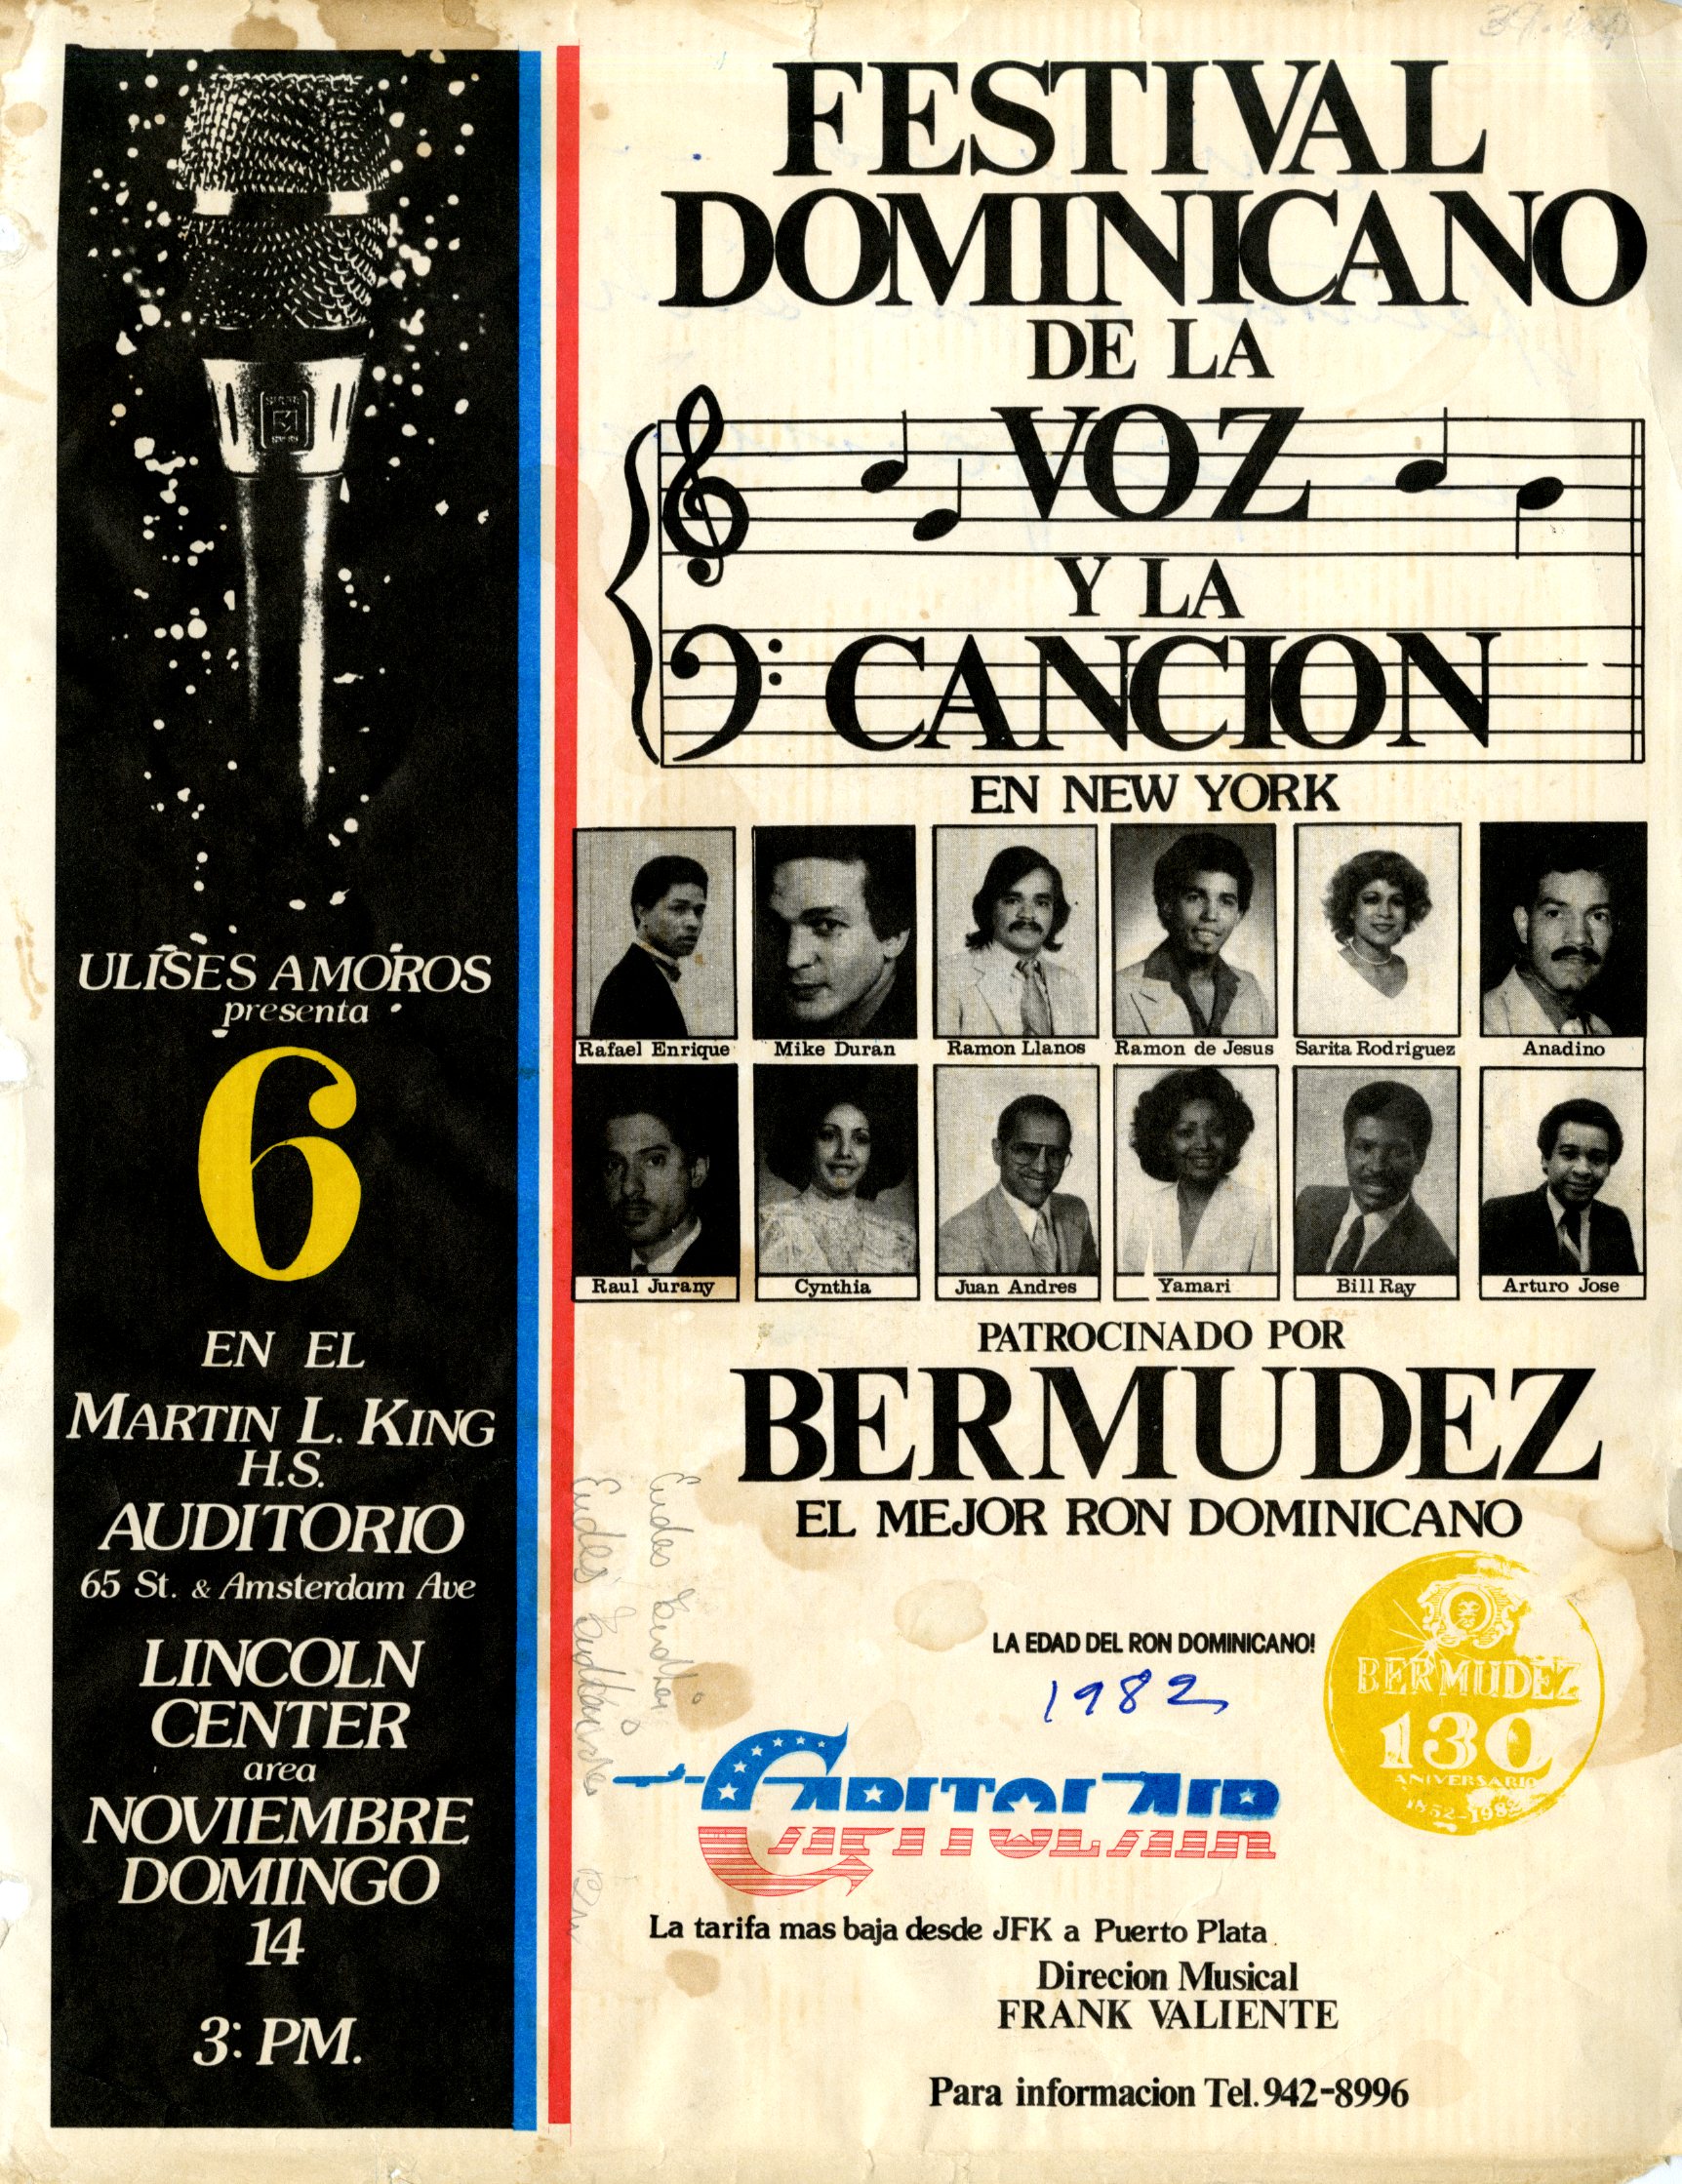 Festival Dominicano de la Voz y la Canción Flyer, November 14, 1982